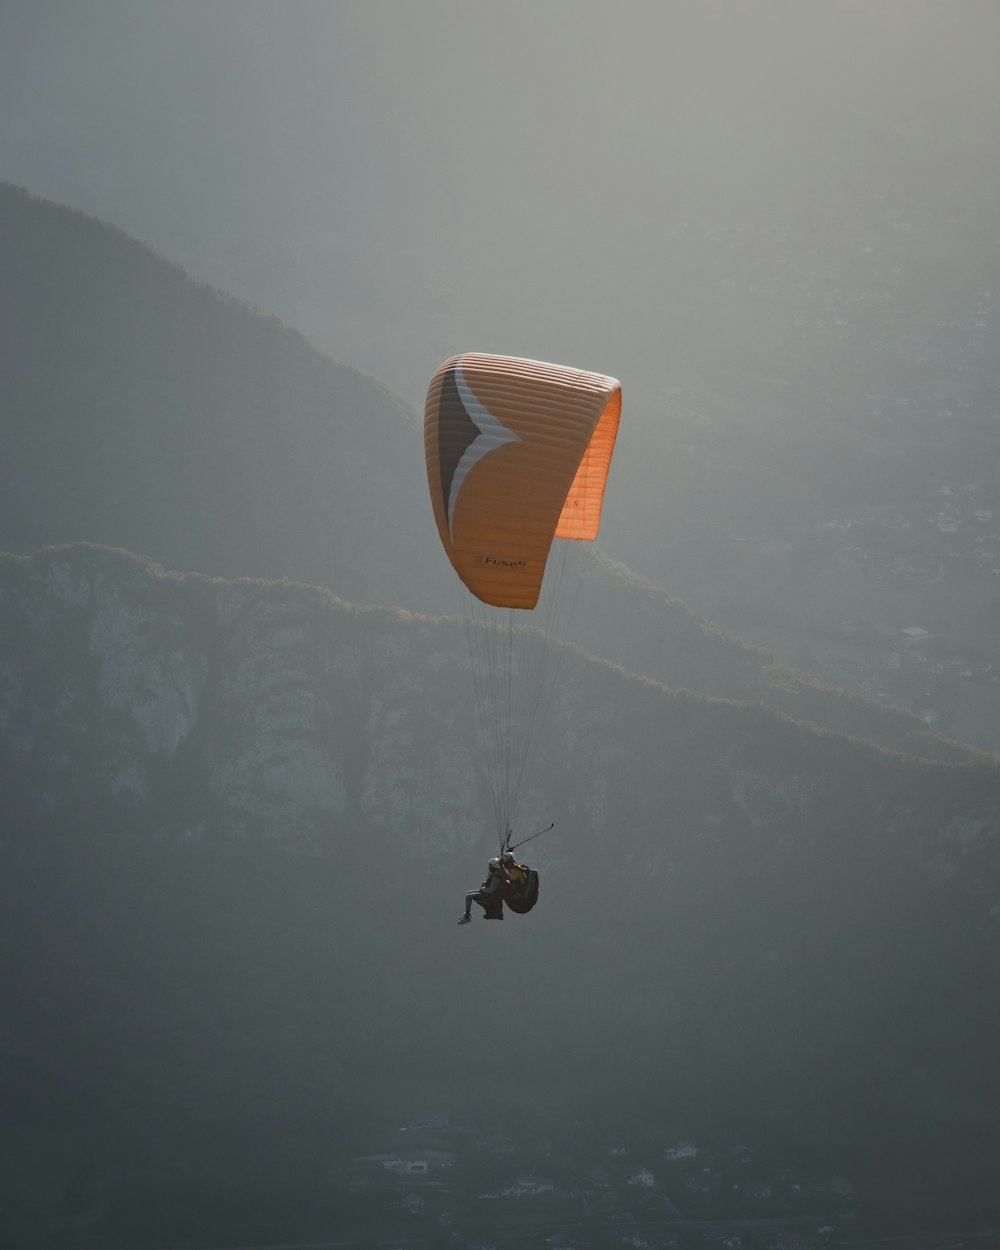 persona in paracadute arancione sopra nuvole bianche durante il giorno